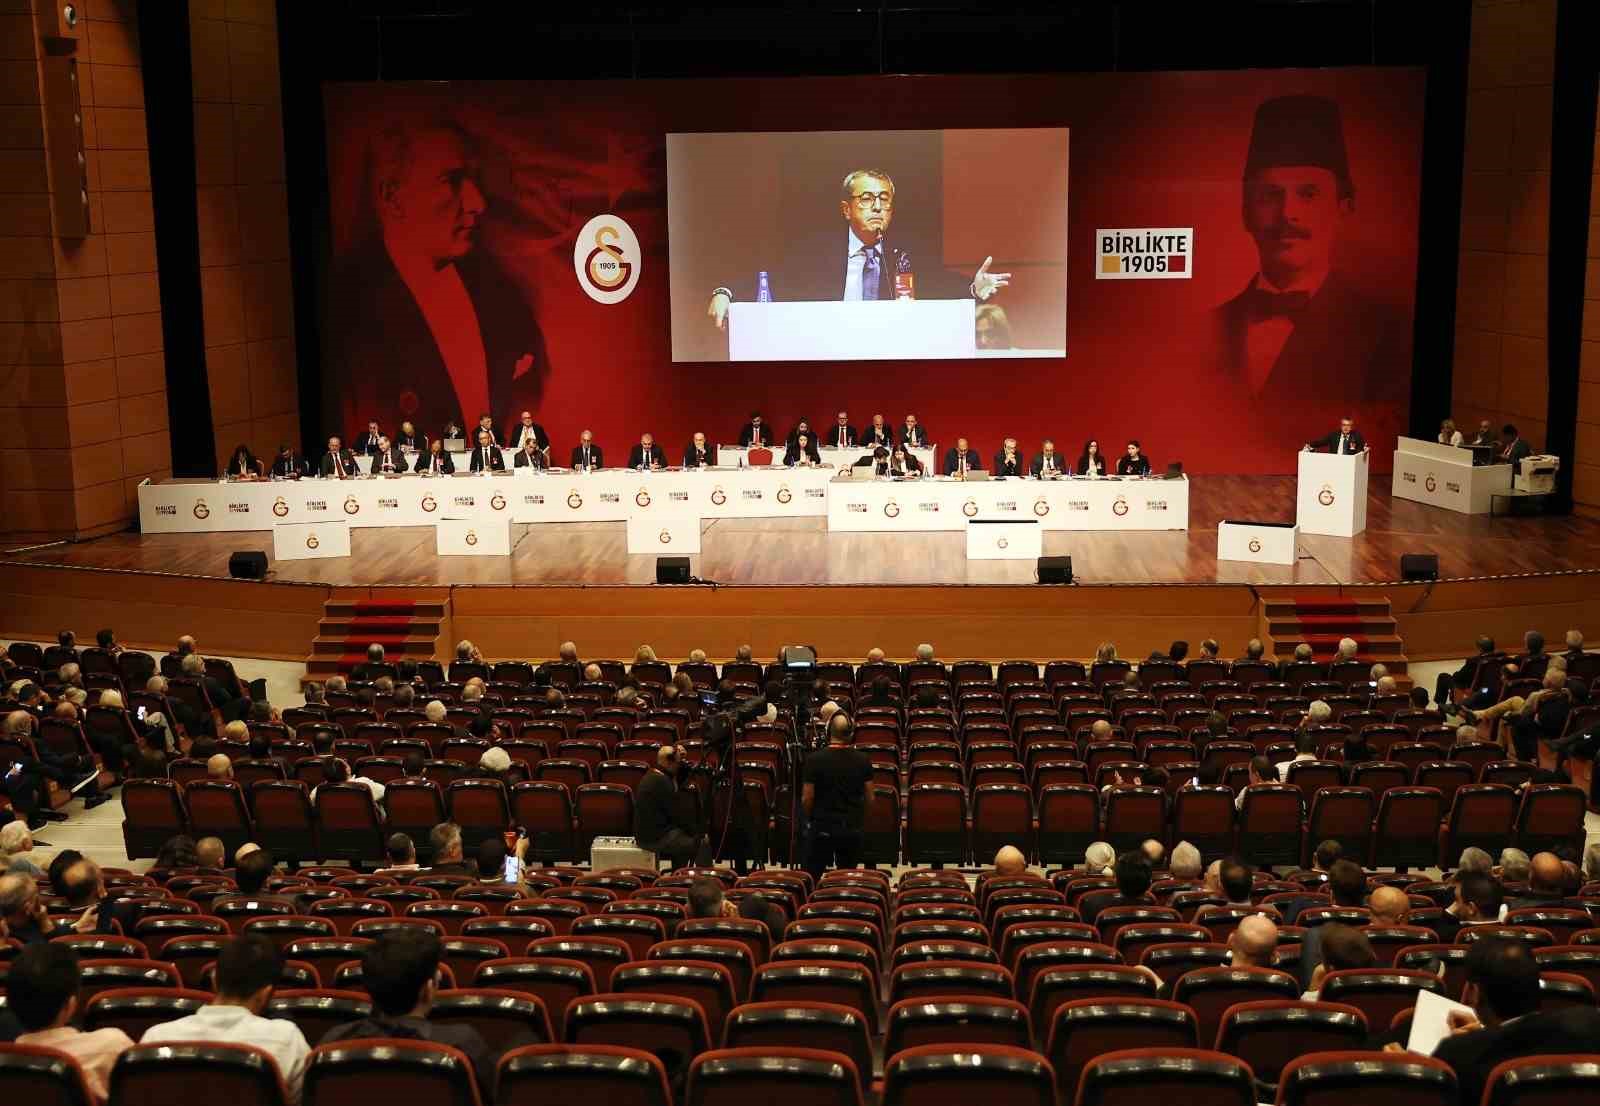 Galatasaray Yıllık Olağan Bütçe Toplantısı başladı